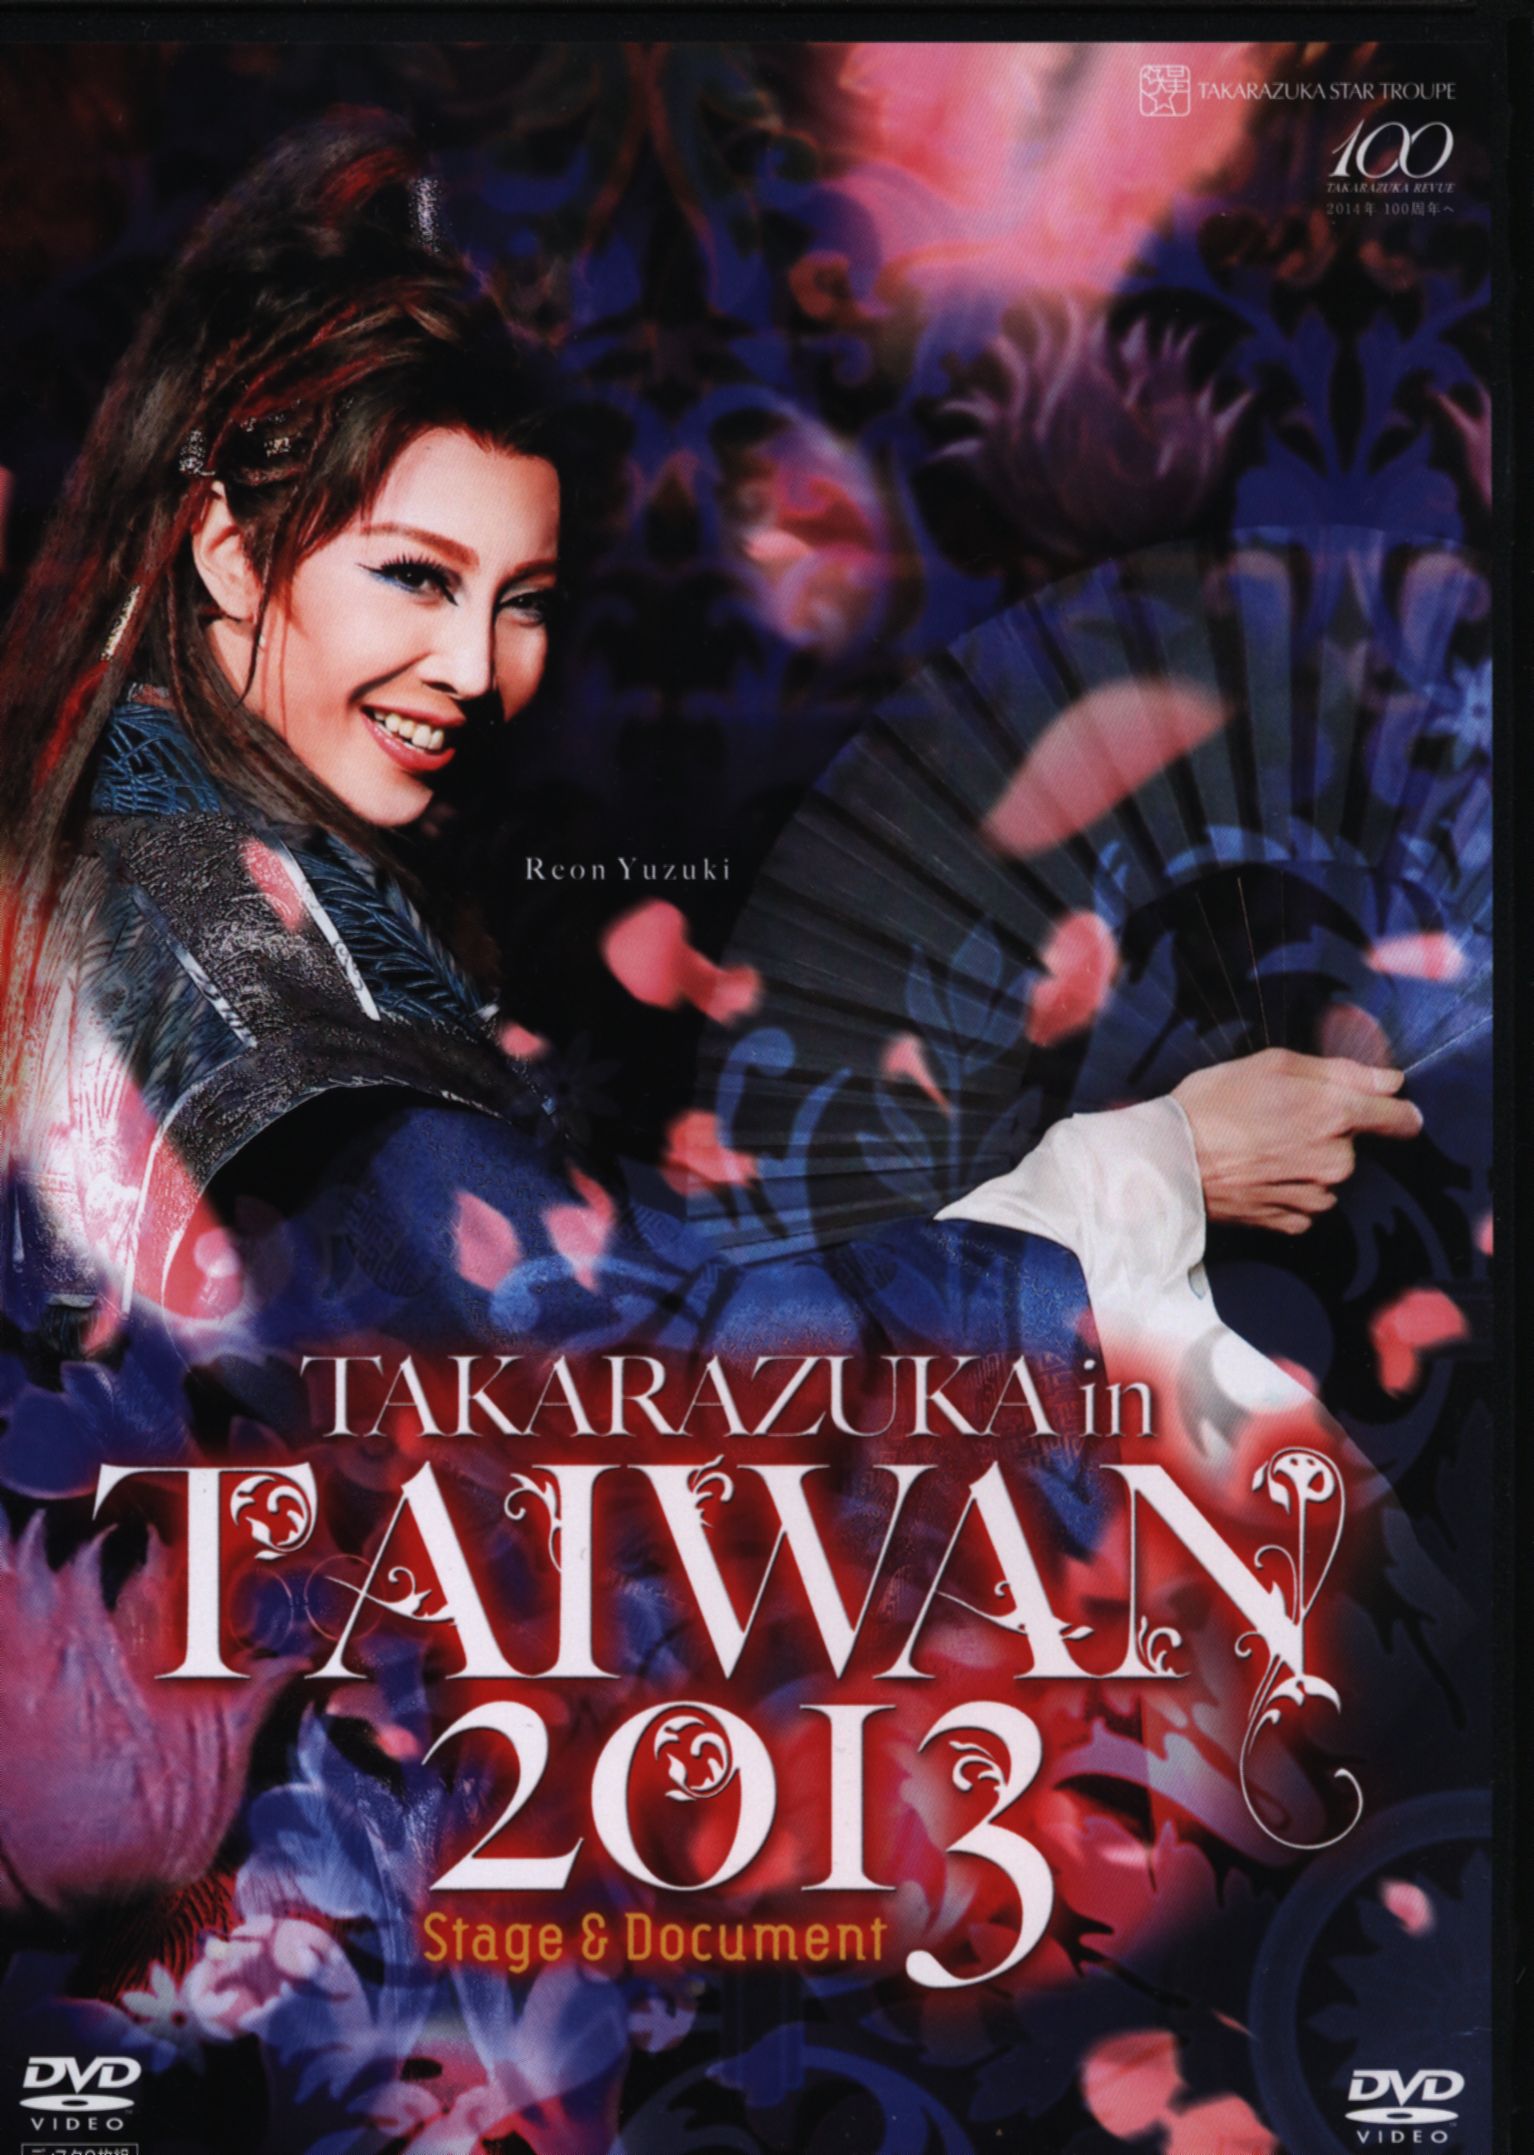 TAKARAZUKA in TAIWAN 2013